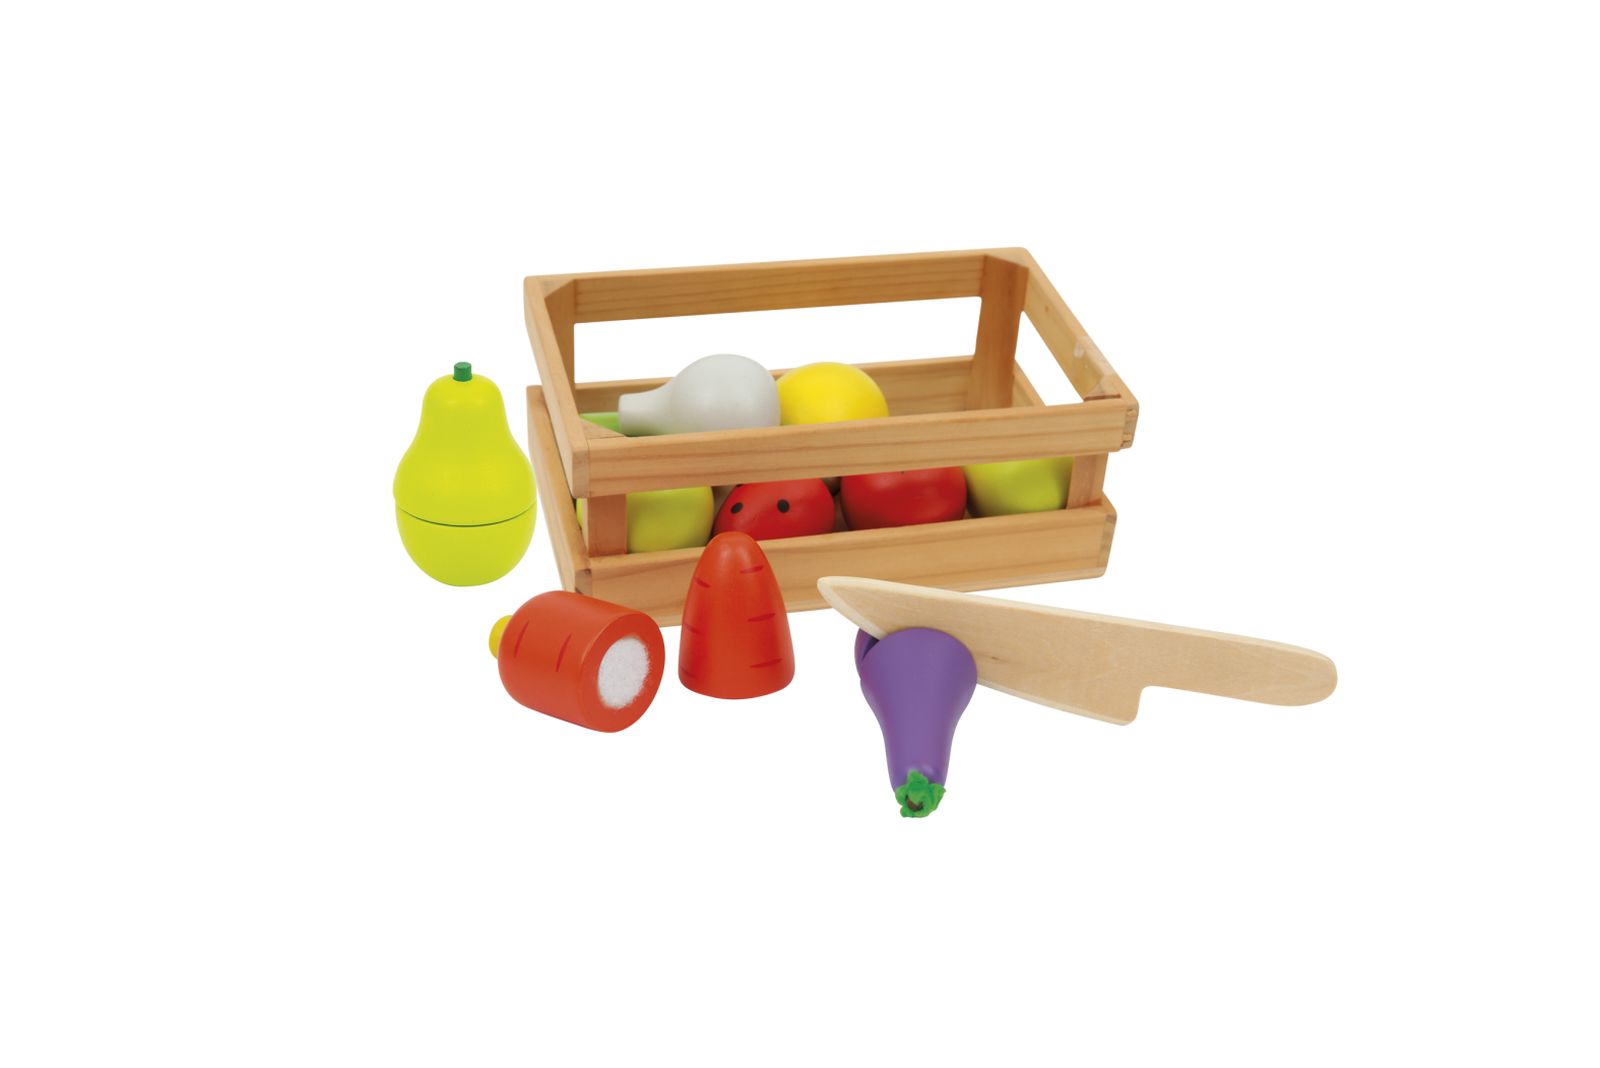 Taglia frutta e verdura fingendo di essere un set di giocattoli da cucina  per bambini